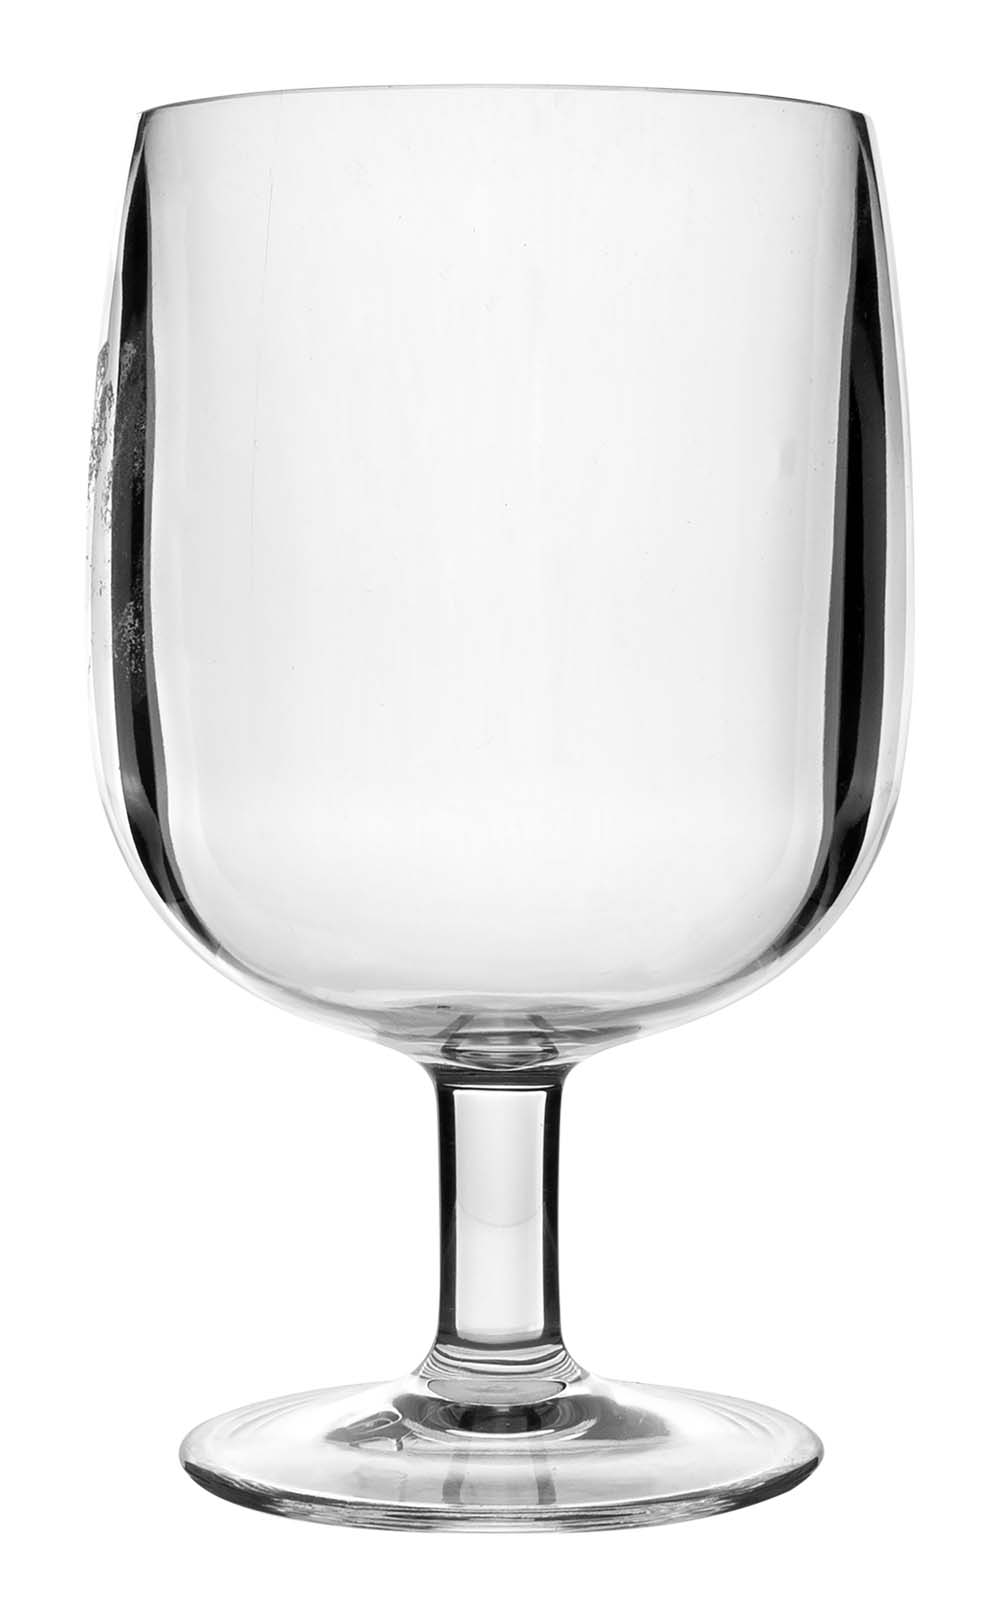 6101401 Een set van 4 compact stapelbare wijnglazen. Gemaakt van sterk kunststof, vrijwel onbreekbaar en lichtgewicht. De glazen zijn BPA vrij.